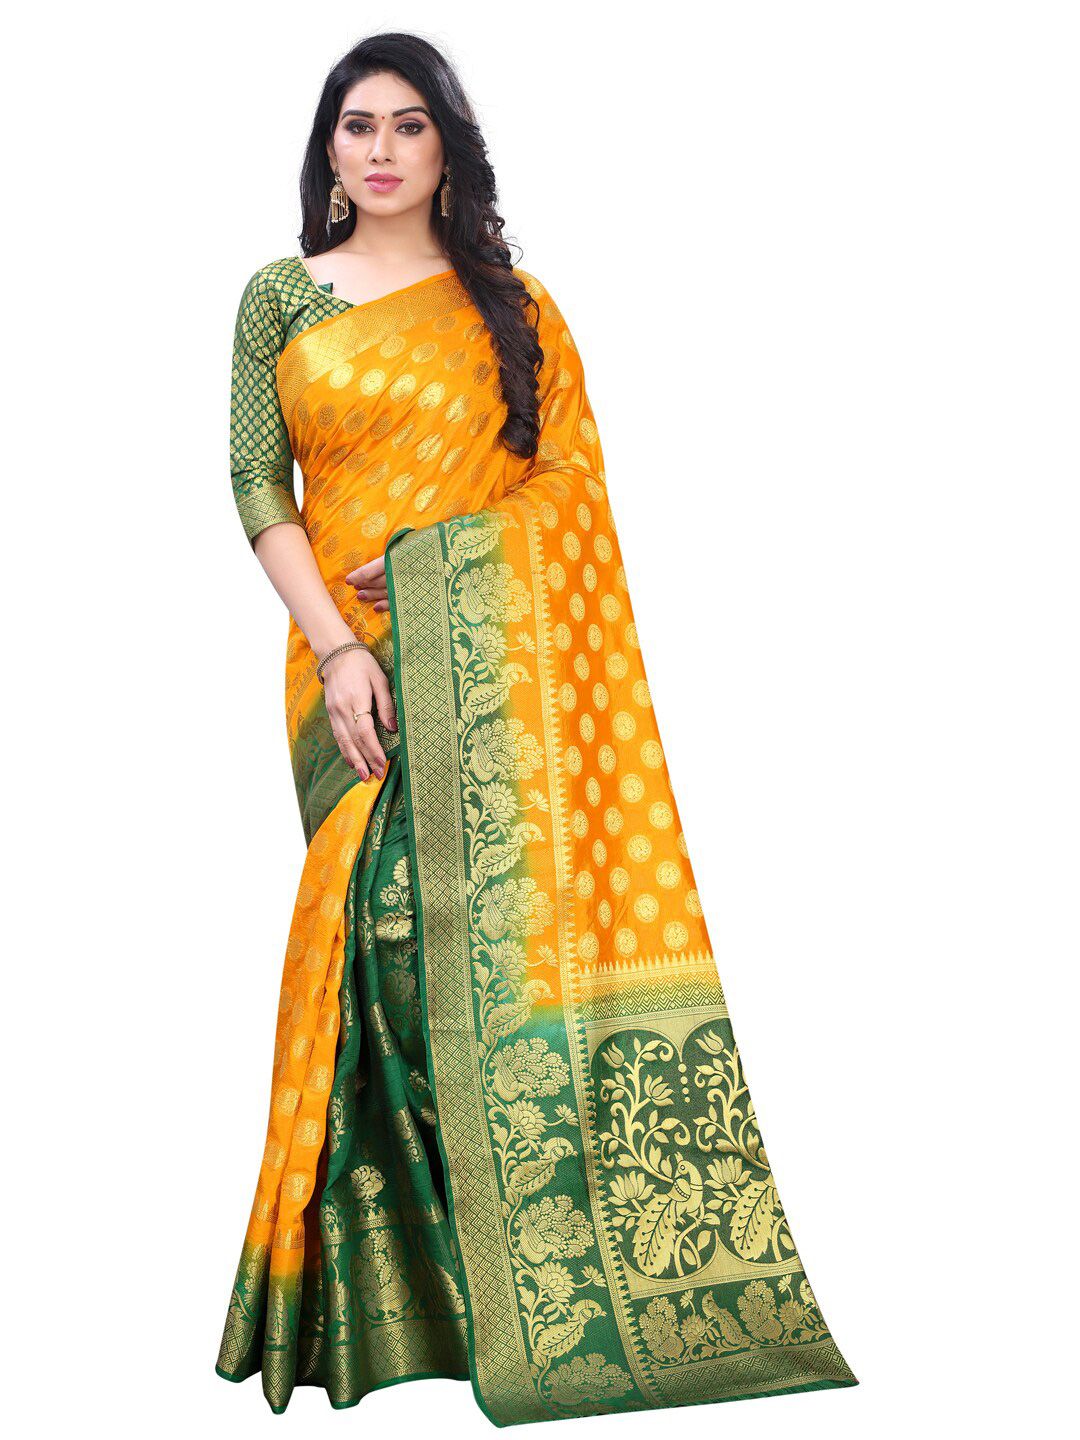 PERFECT WEAR Yellow & Green Ethnic Motifs Zari Silk Cotton Banarasi Saree Price in India